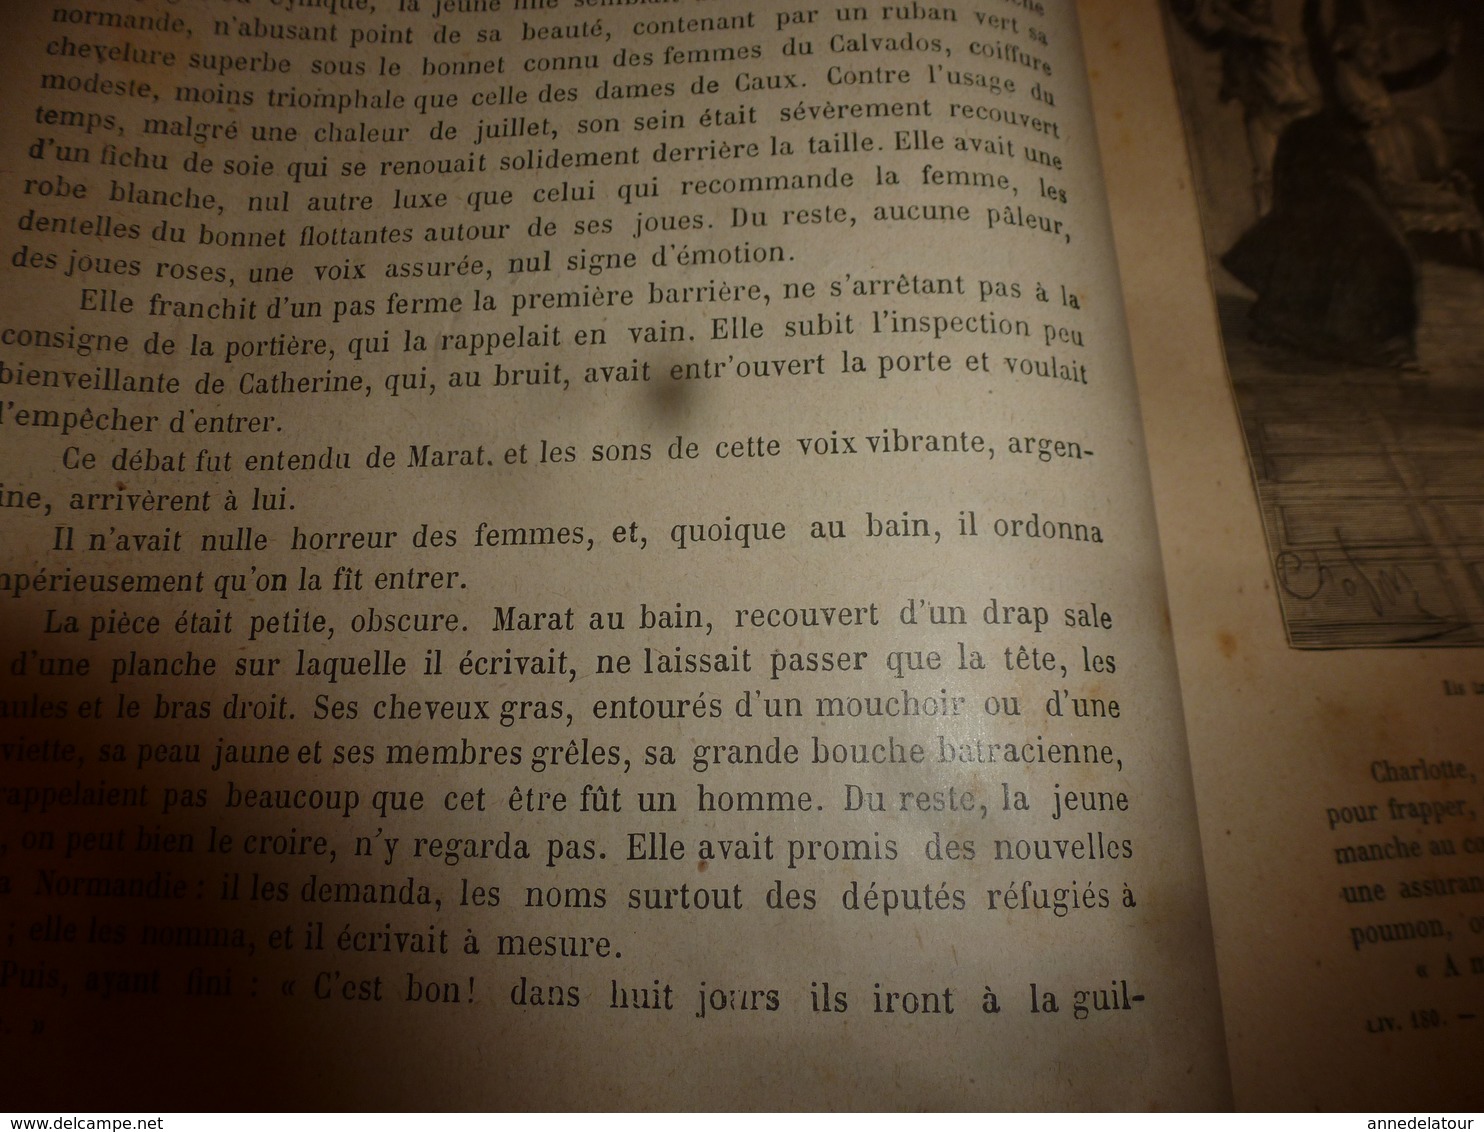 18??  Charlotte Corday acheta un couteau frais émoulu, Marat,etc (Histoire de la Révolution française)